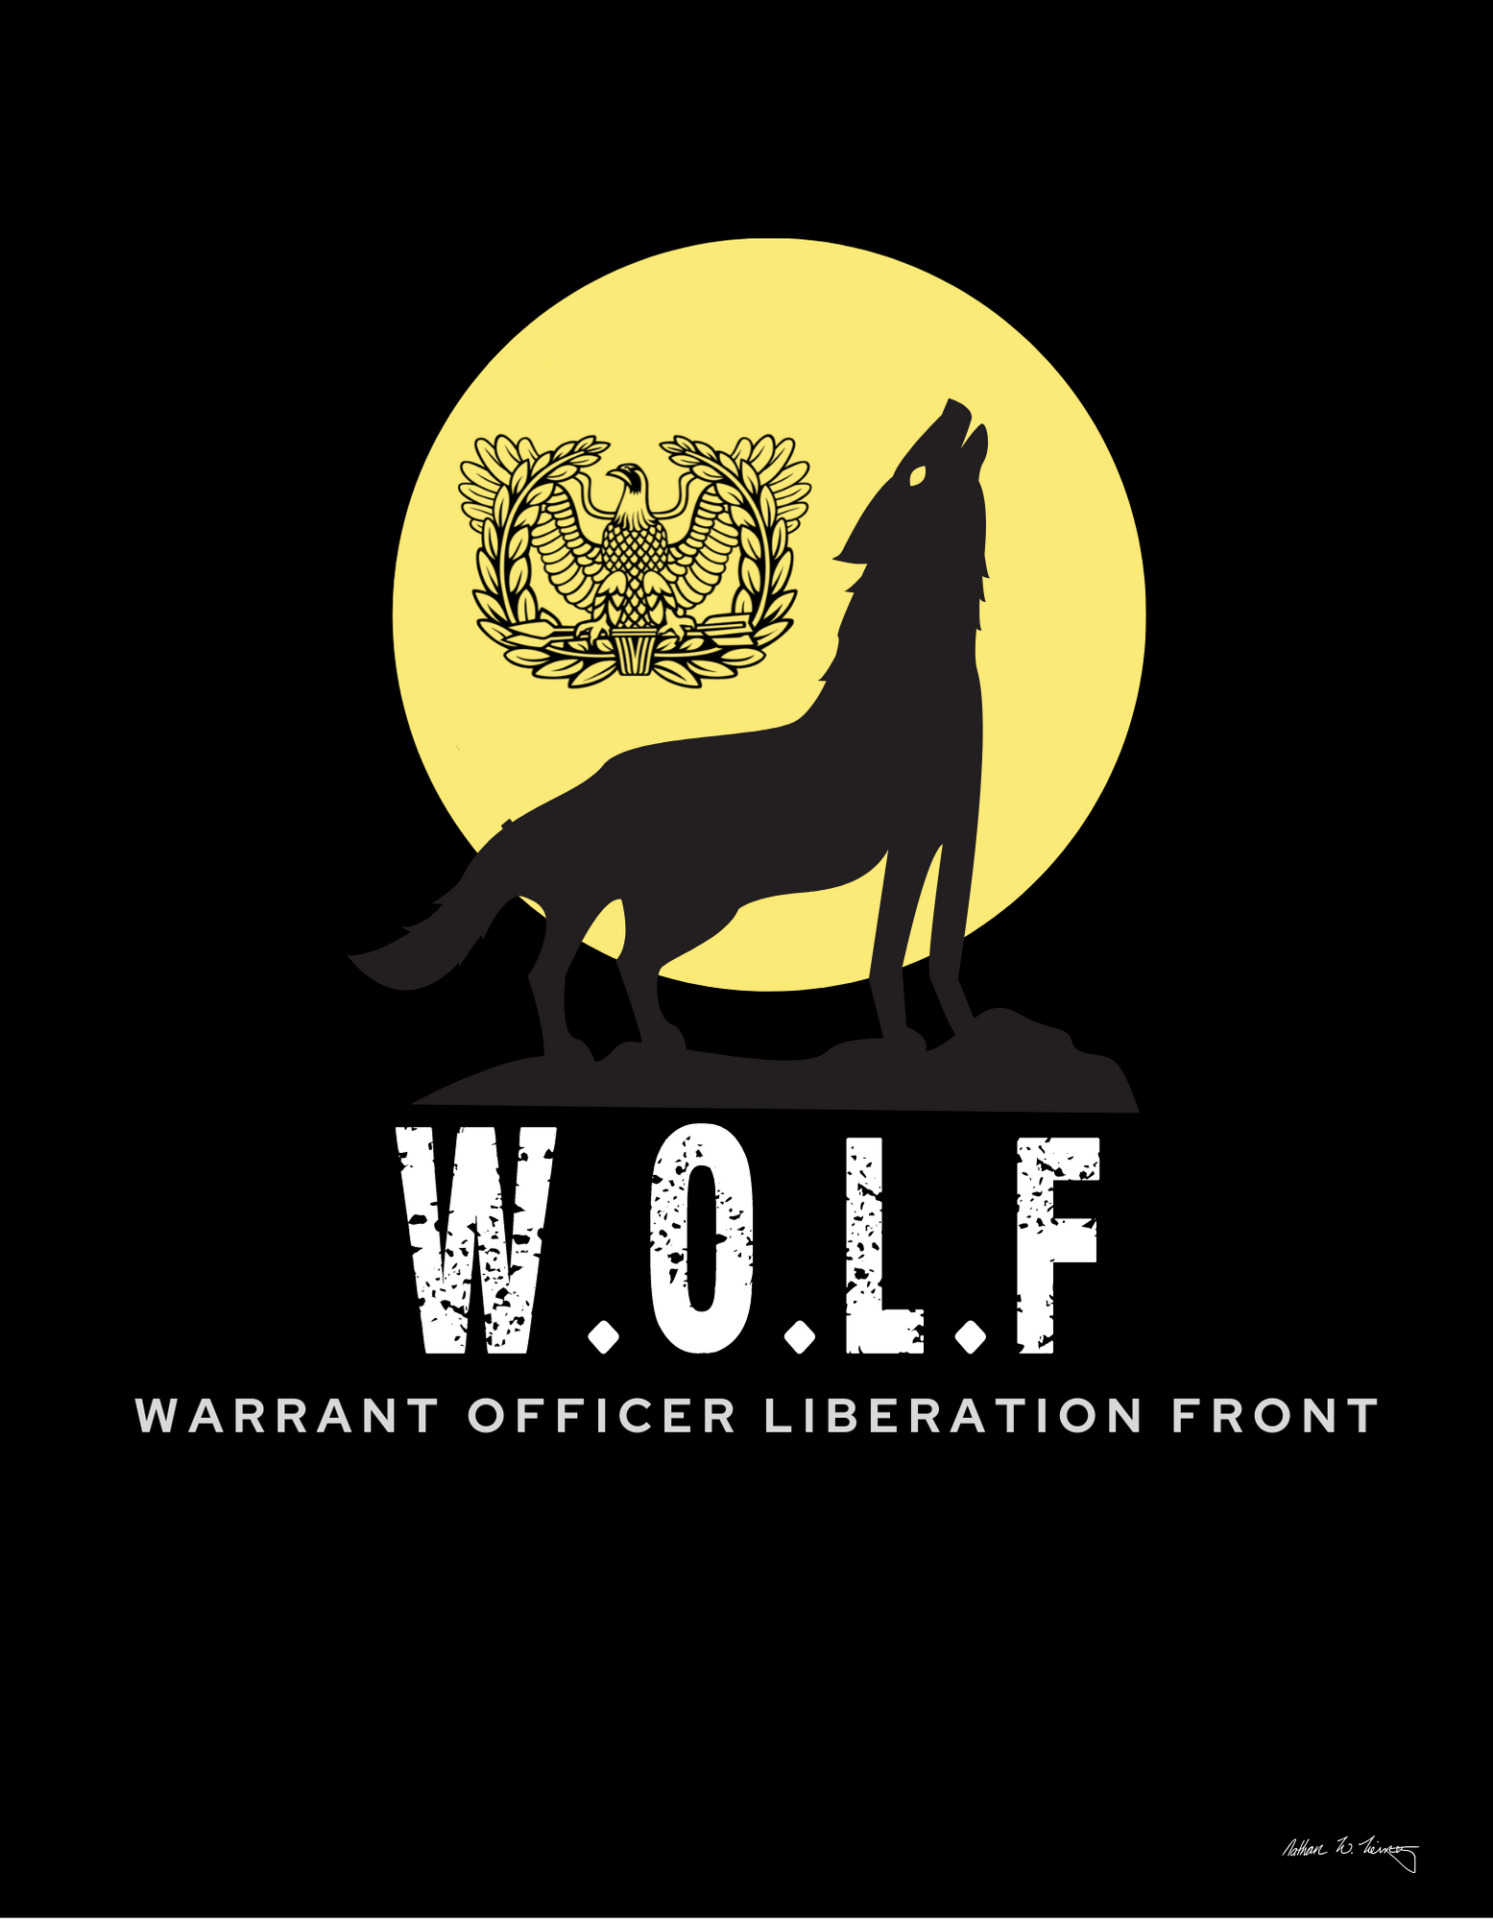 Warrant Officer Liberation Front logo design 3